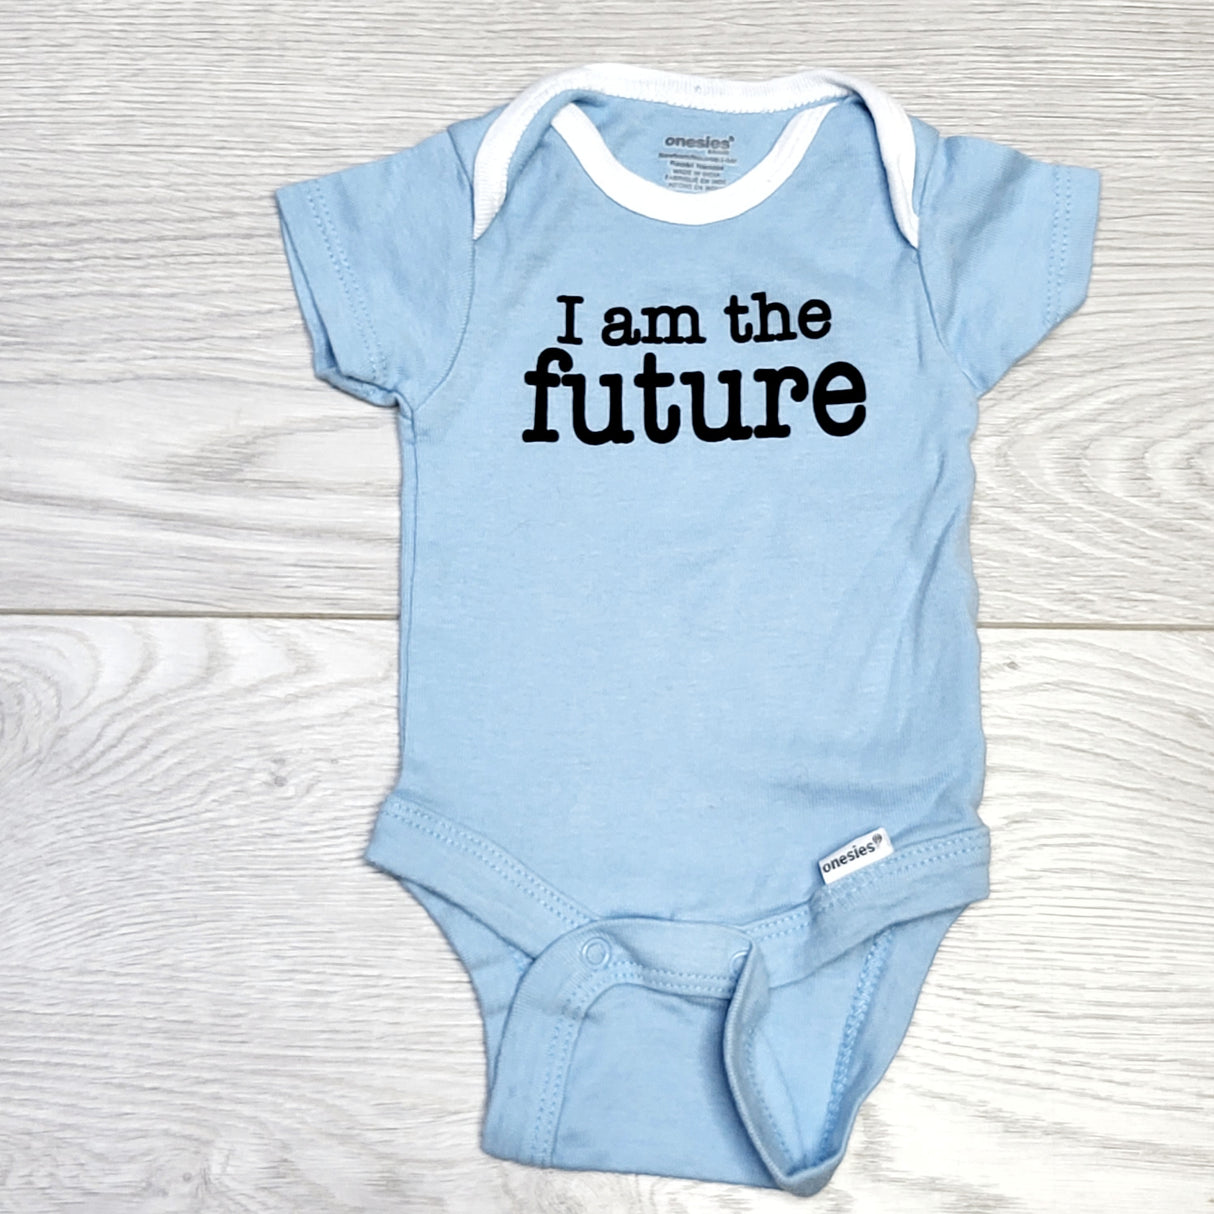 SPLT2 - Onesies brand blue "I am the Future" onesie, newborn size